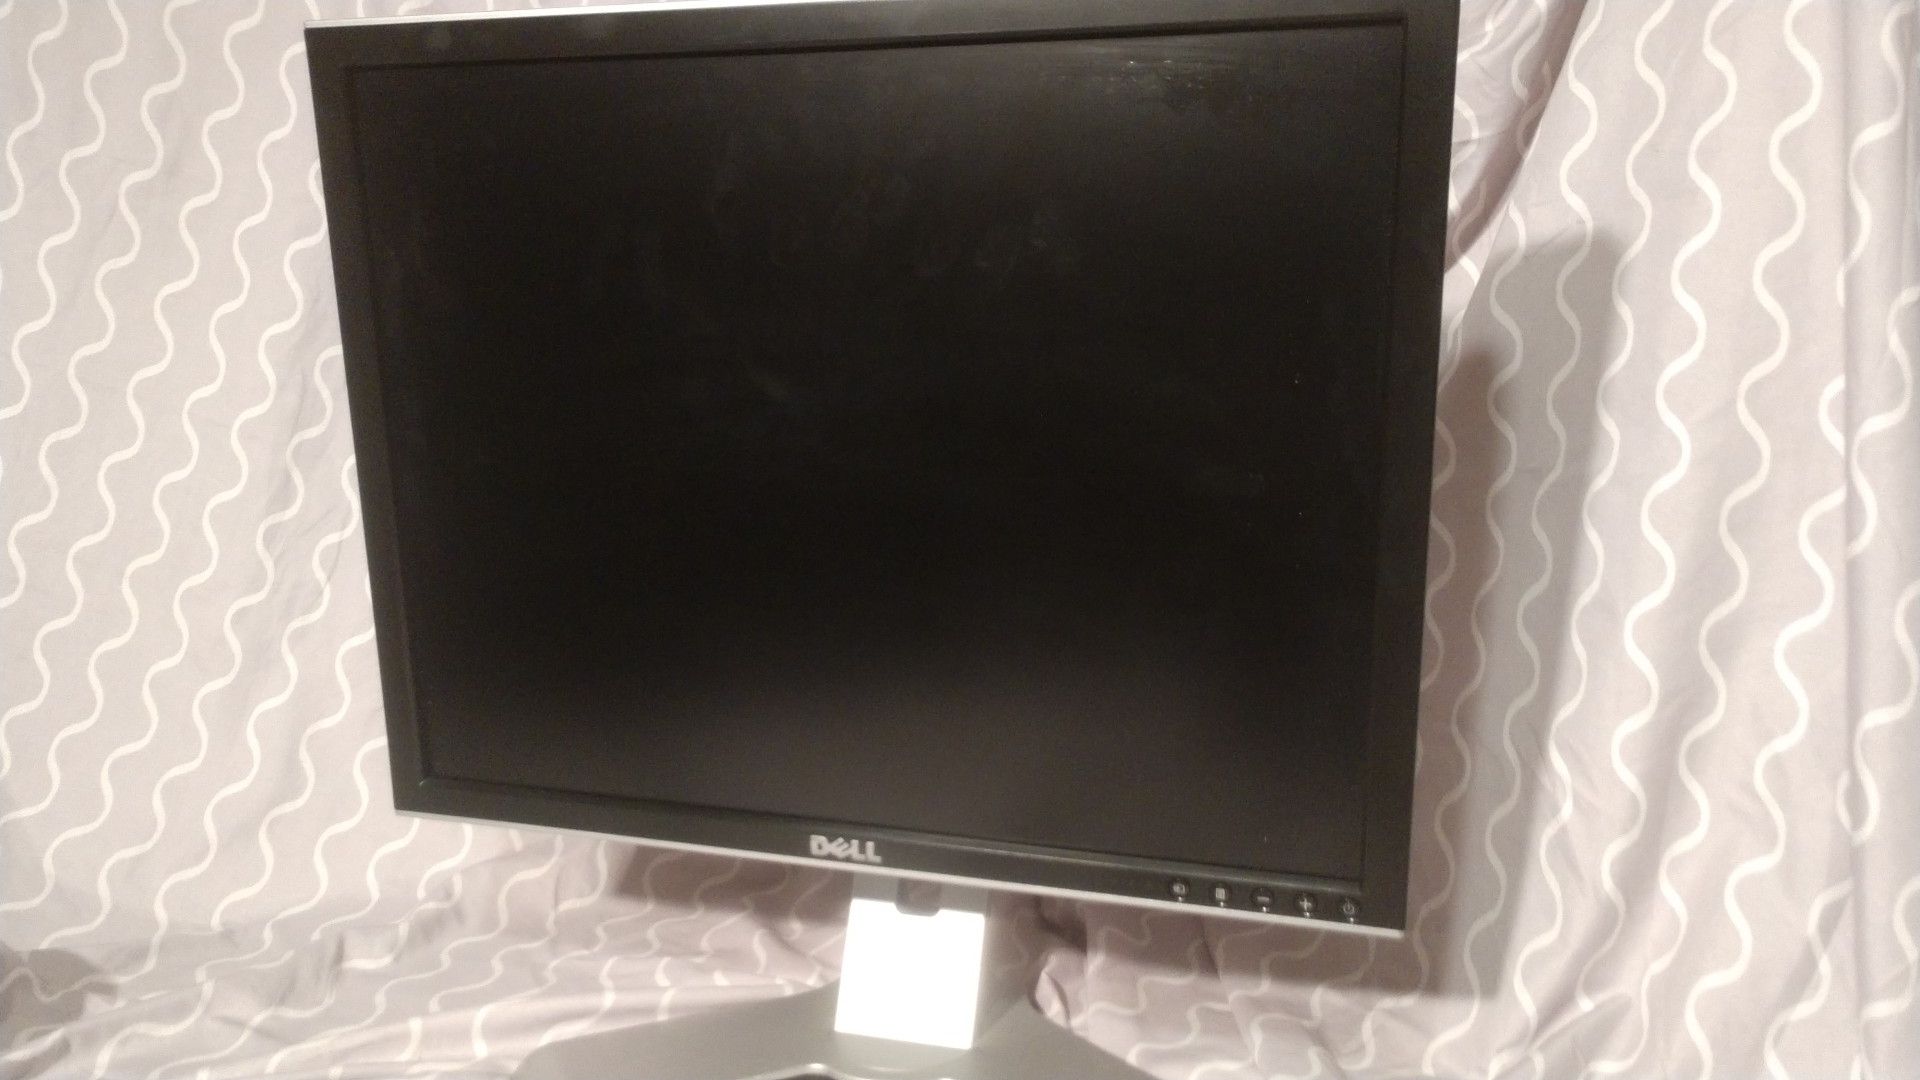 19" Dell slide hight monitor